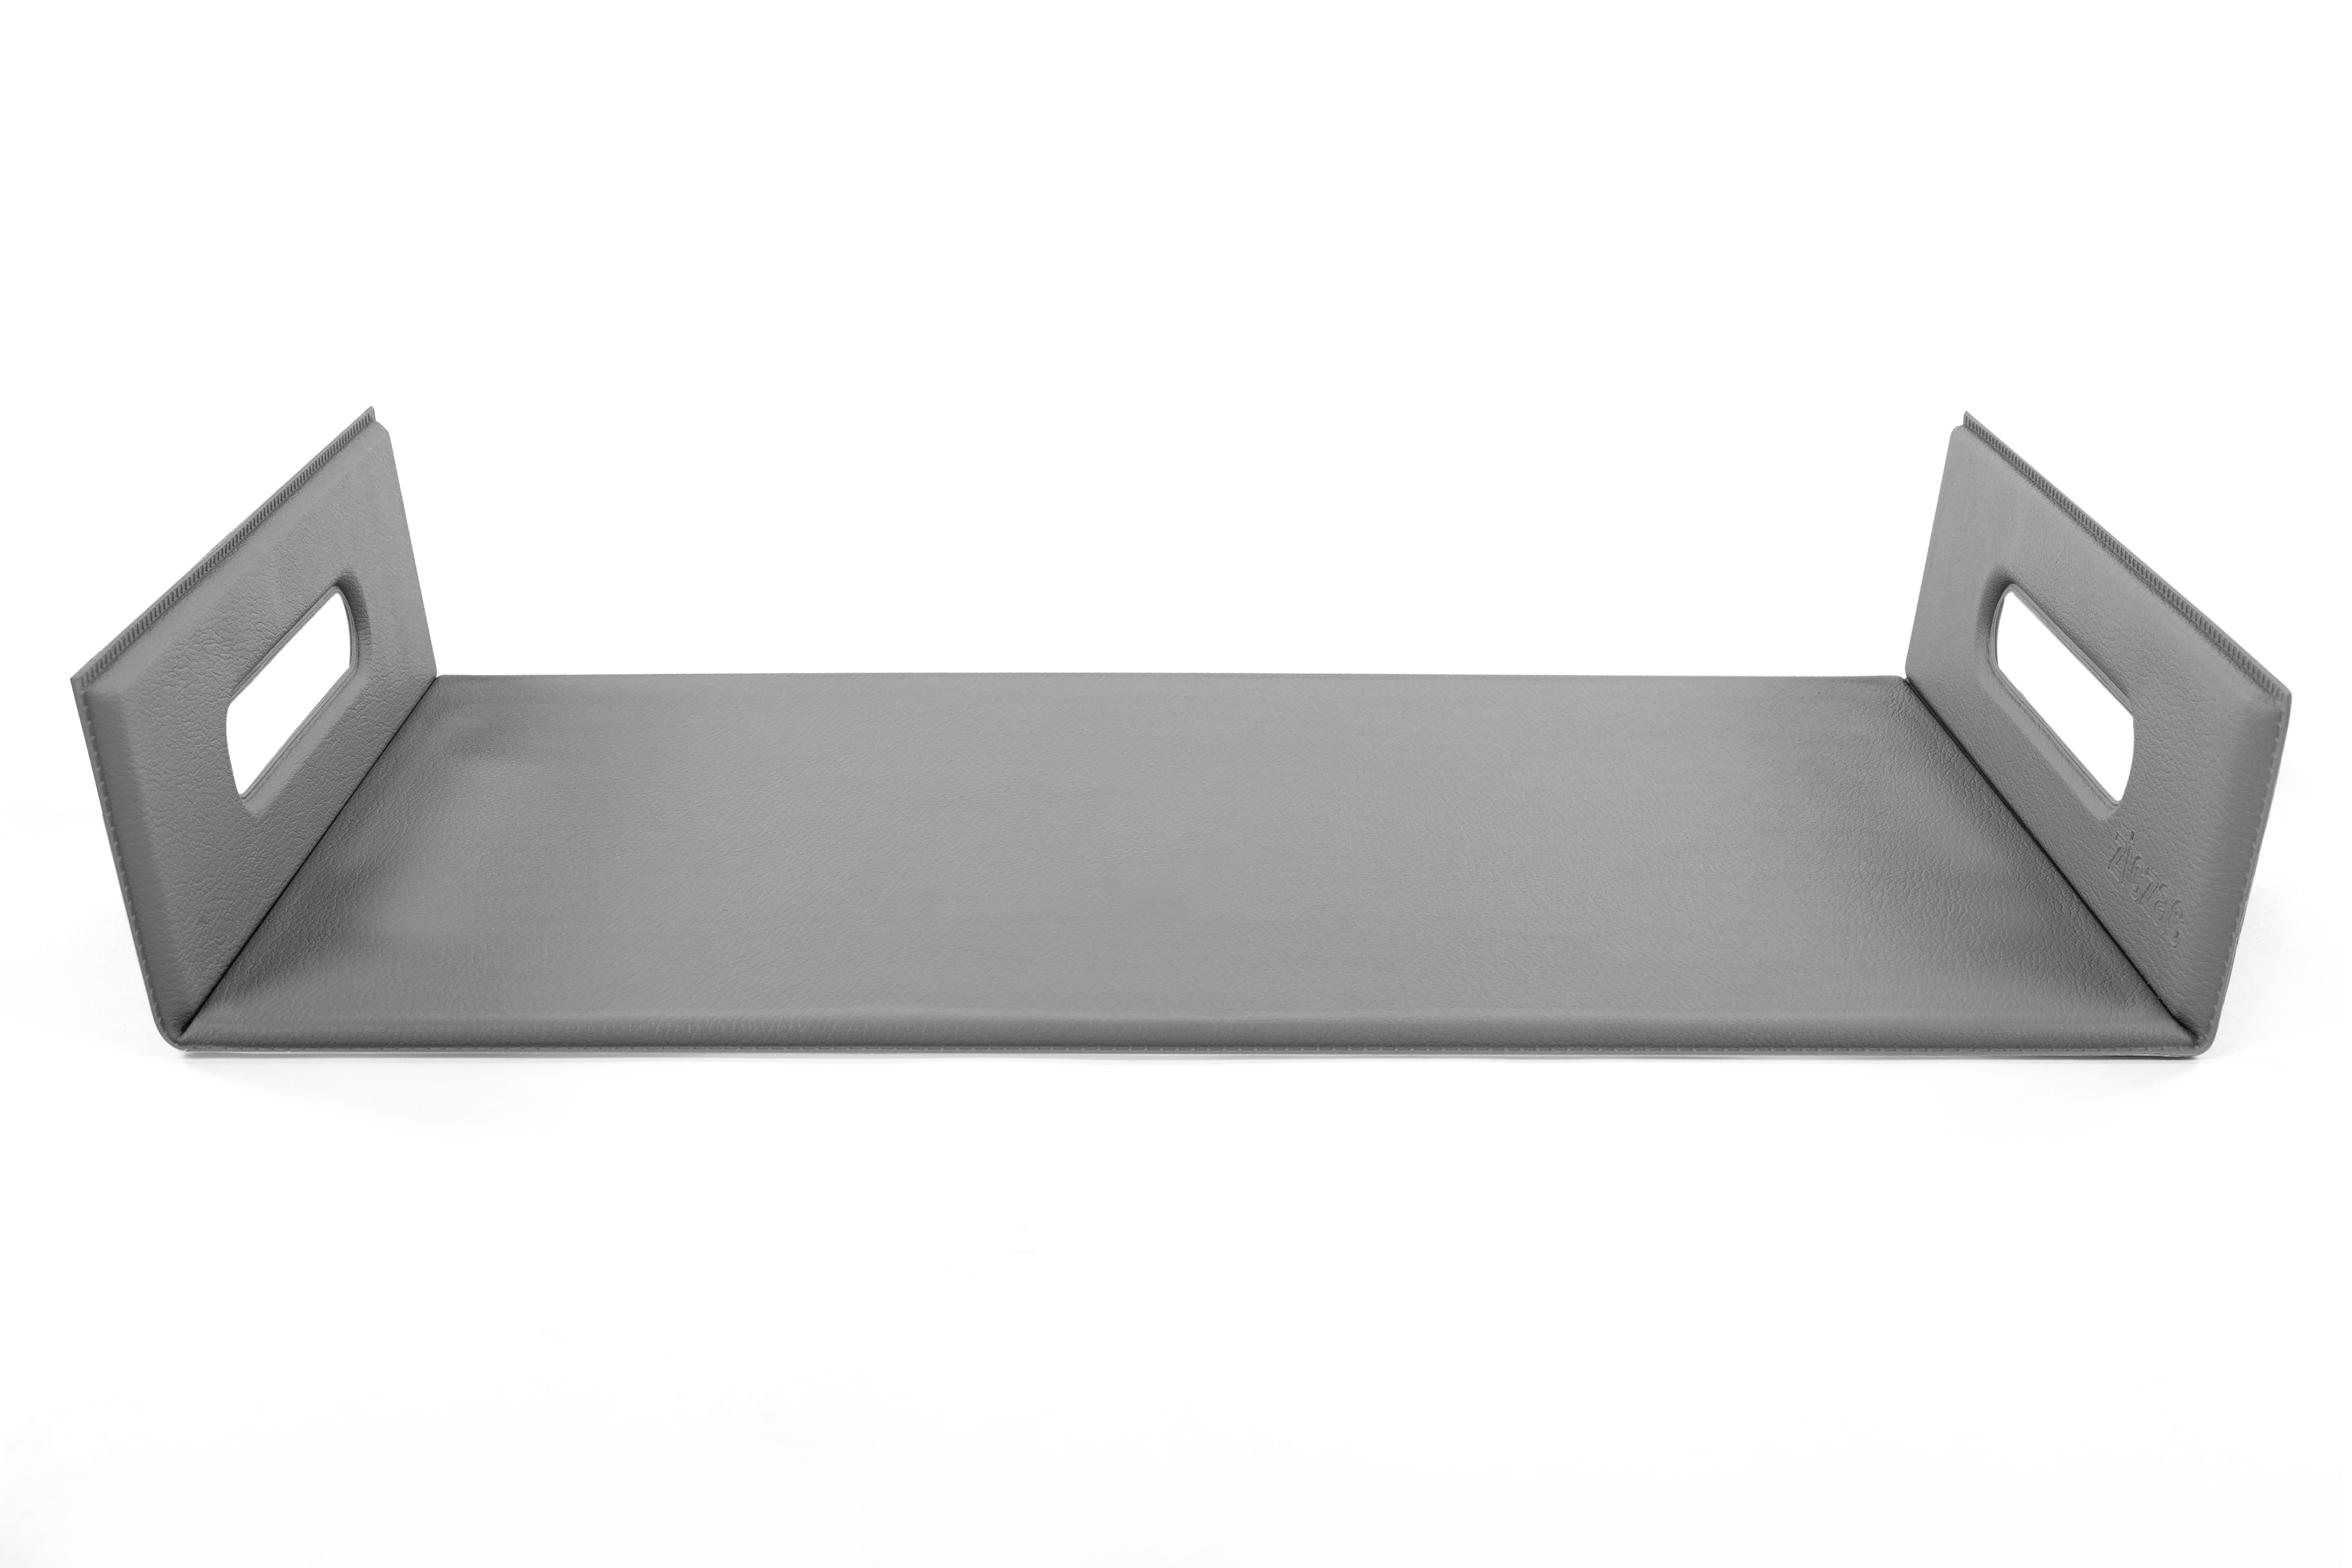 Plateau -TOGO, 33x45 + 2x6 cm, grey